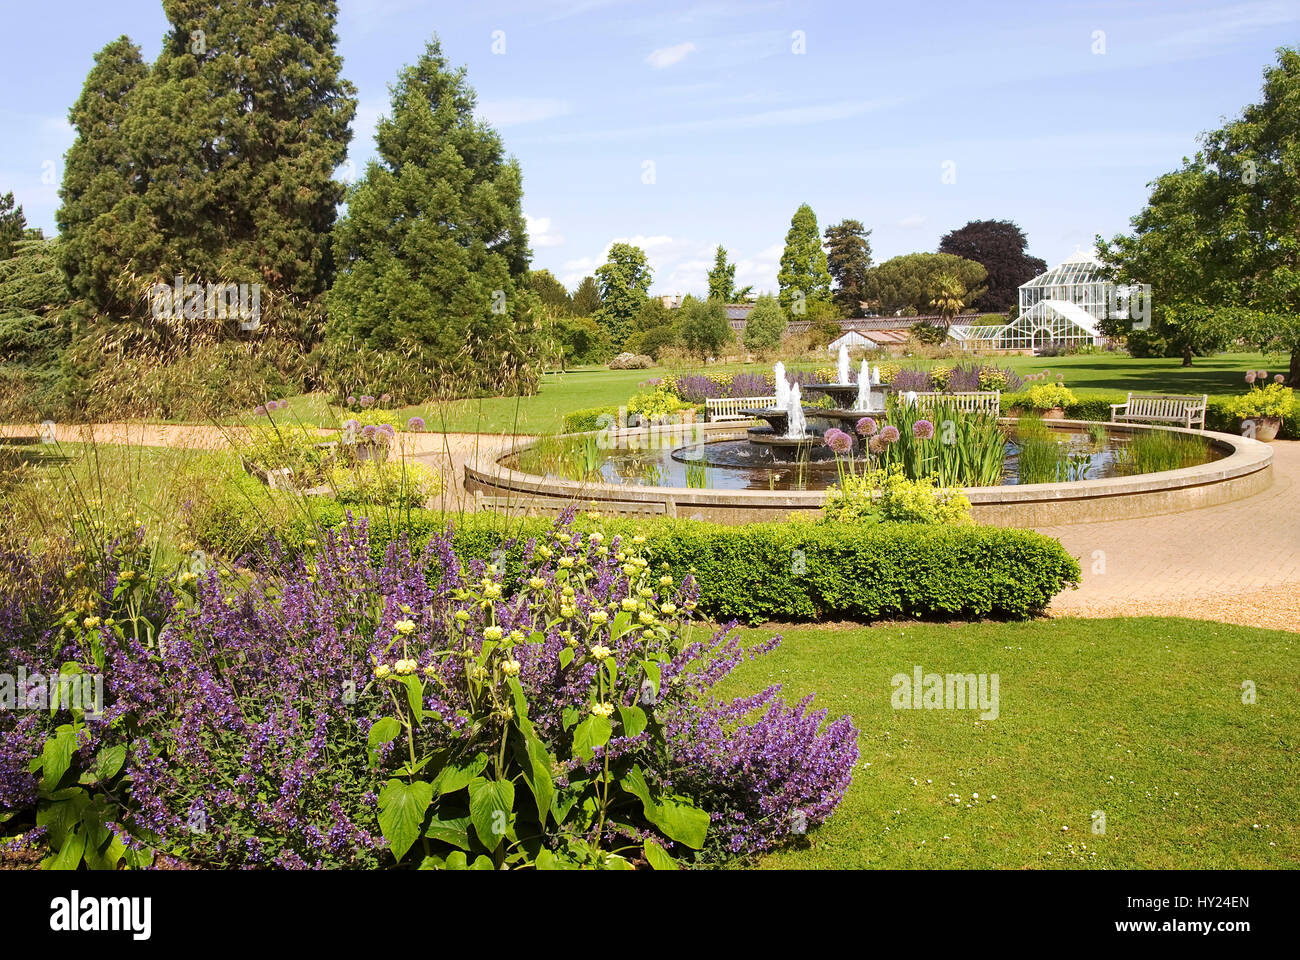 Visualizzare oltre le ben note università Giardini Botanici presso la città di Cambridge, Inghilterra. Im bekannten Botanischen Garten der Universitaetsstadt Cambri Foto Stock